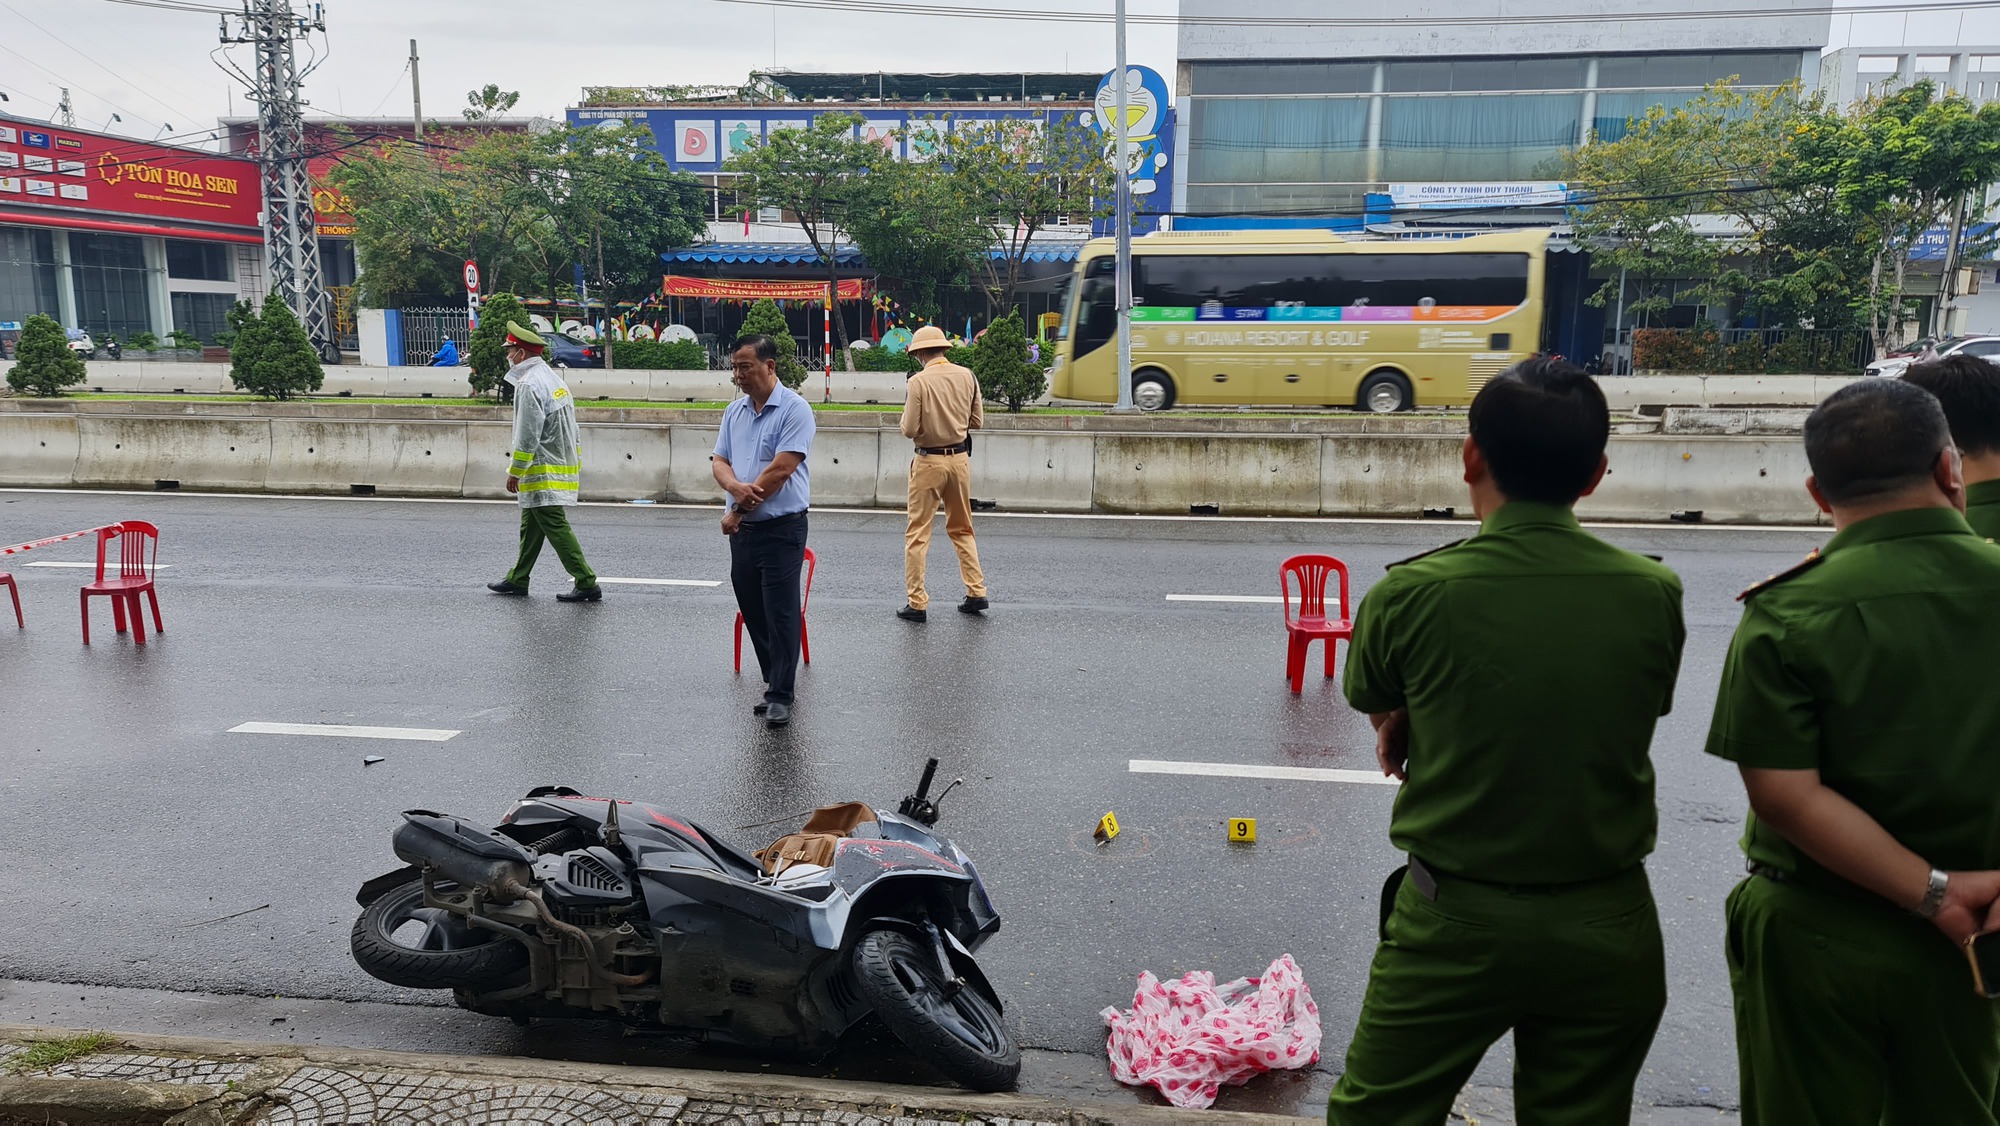 NÓNG: Cướp ngân hàng tại Đà Nẵng, 1 bảo vệ bị thương rất nặng - Ảnh 5.